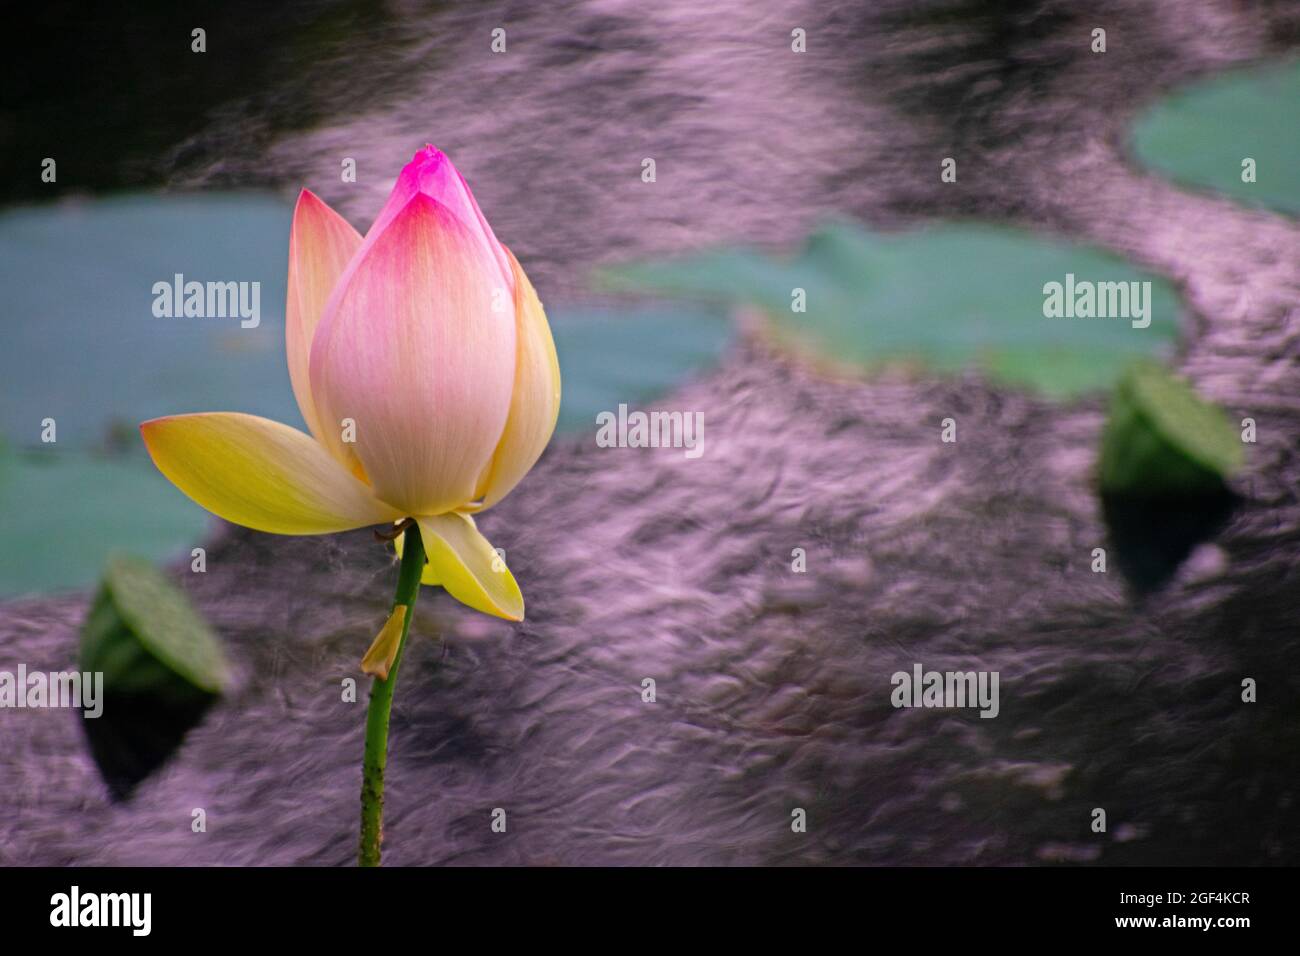 Fiore di loto rosa chiaro che galleggia in un lago con uno sfondo sfocato di foglie e steli di loto, noto anche come Nelumbo nucifera e loto indiano Foto Stock